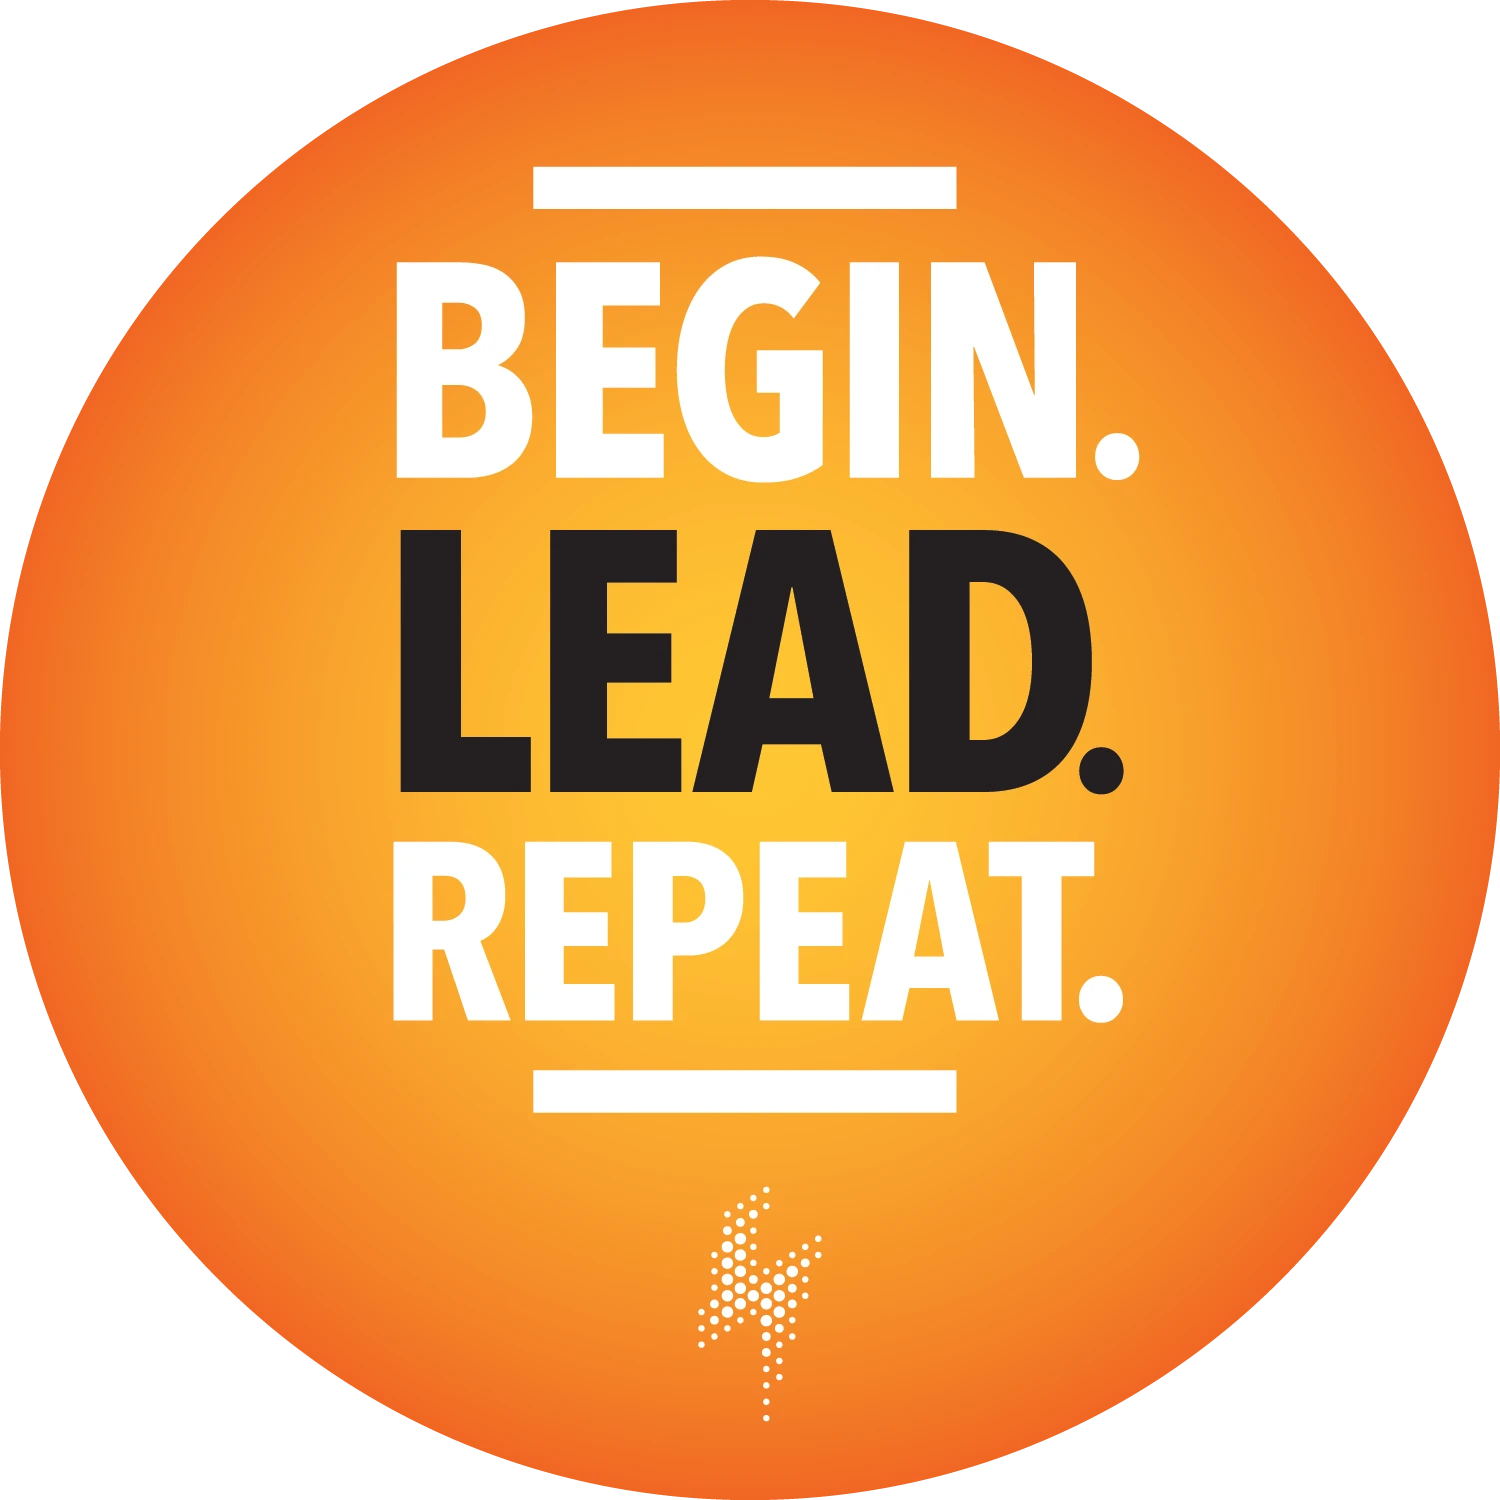 Begin lead repeat.